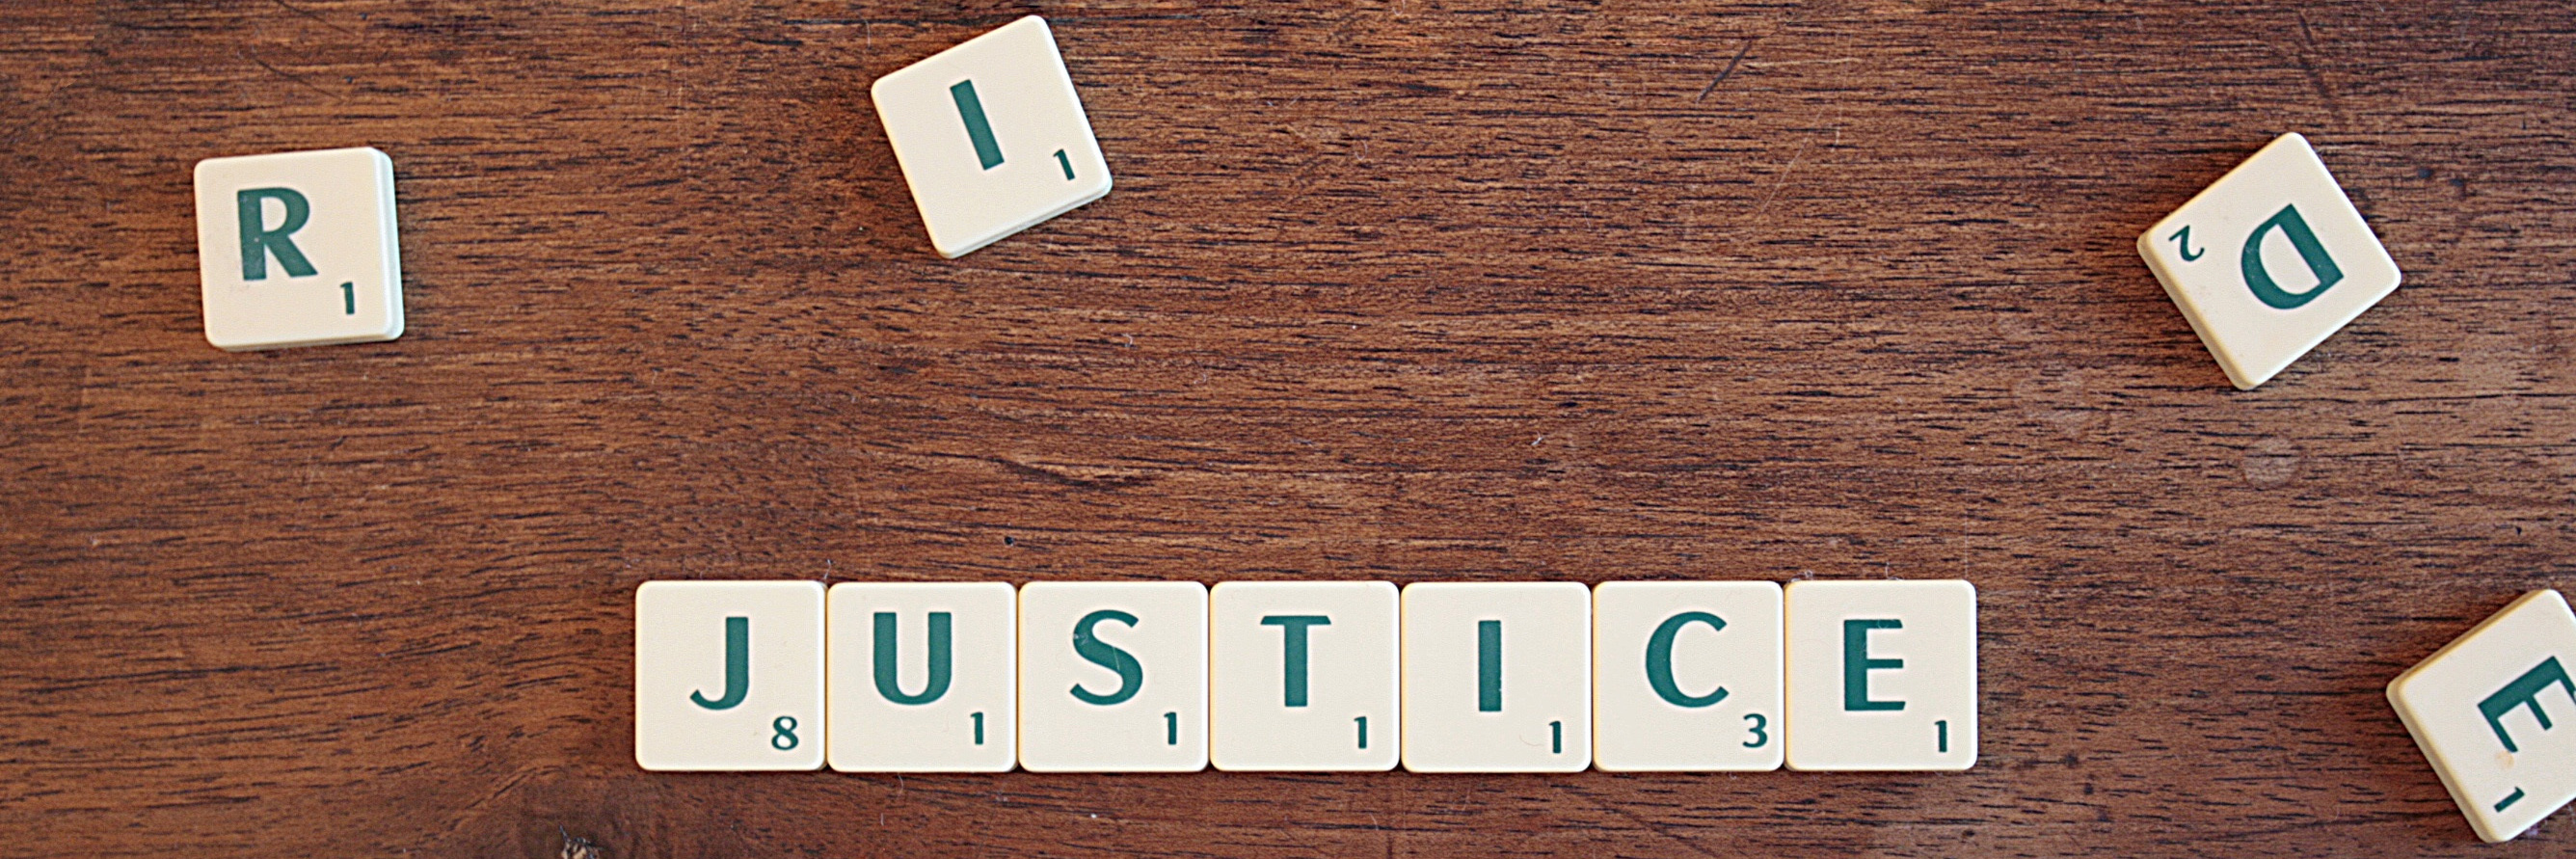 Das Wort justice ist als Buchstabenpuzzle gelegt